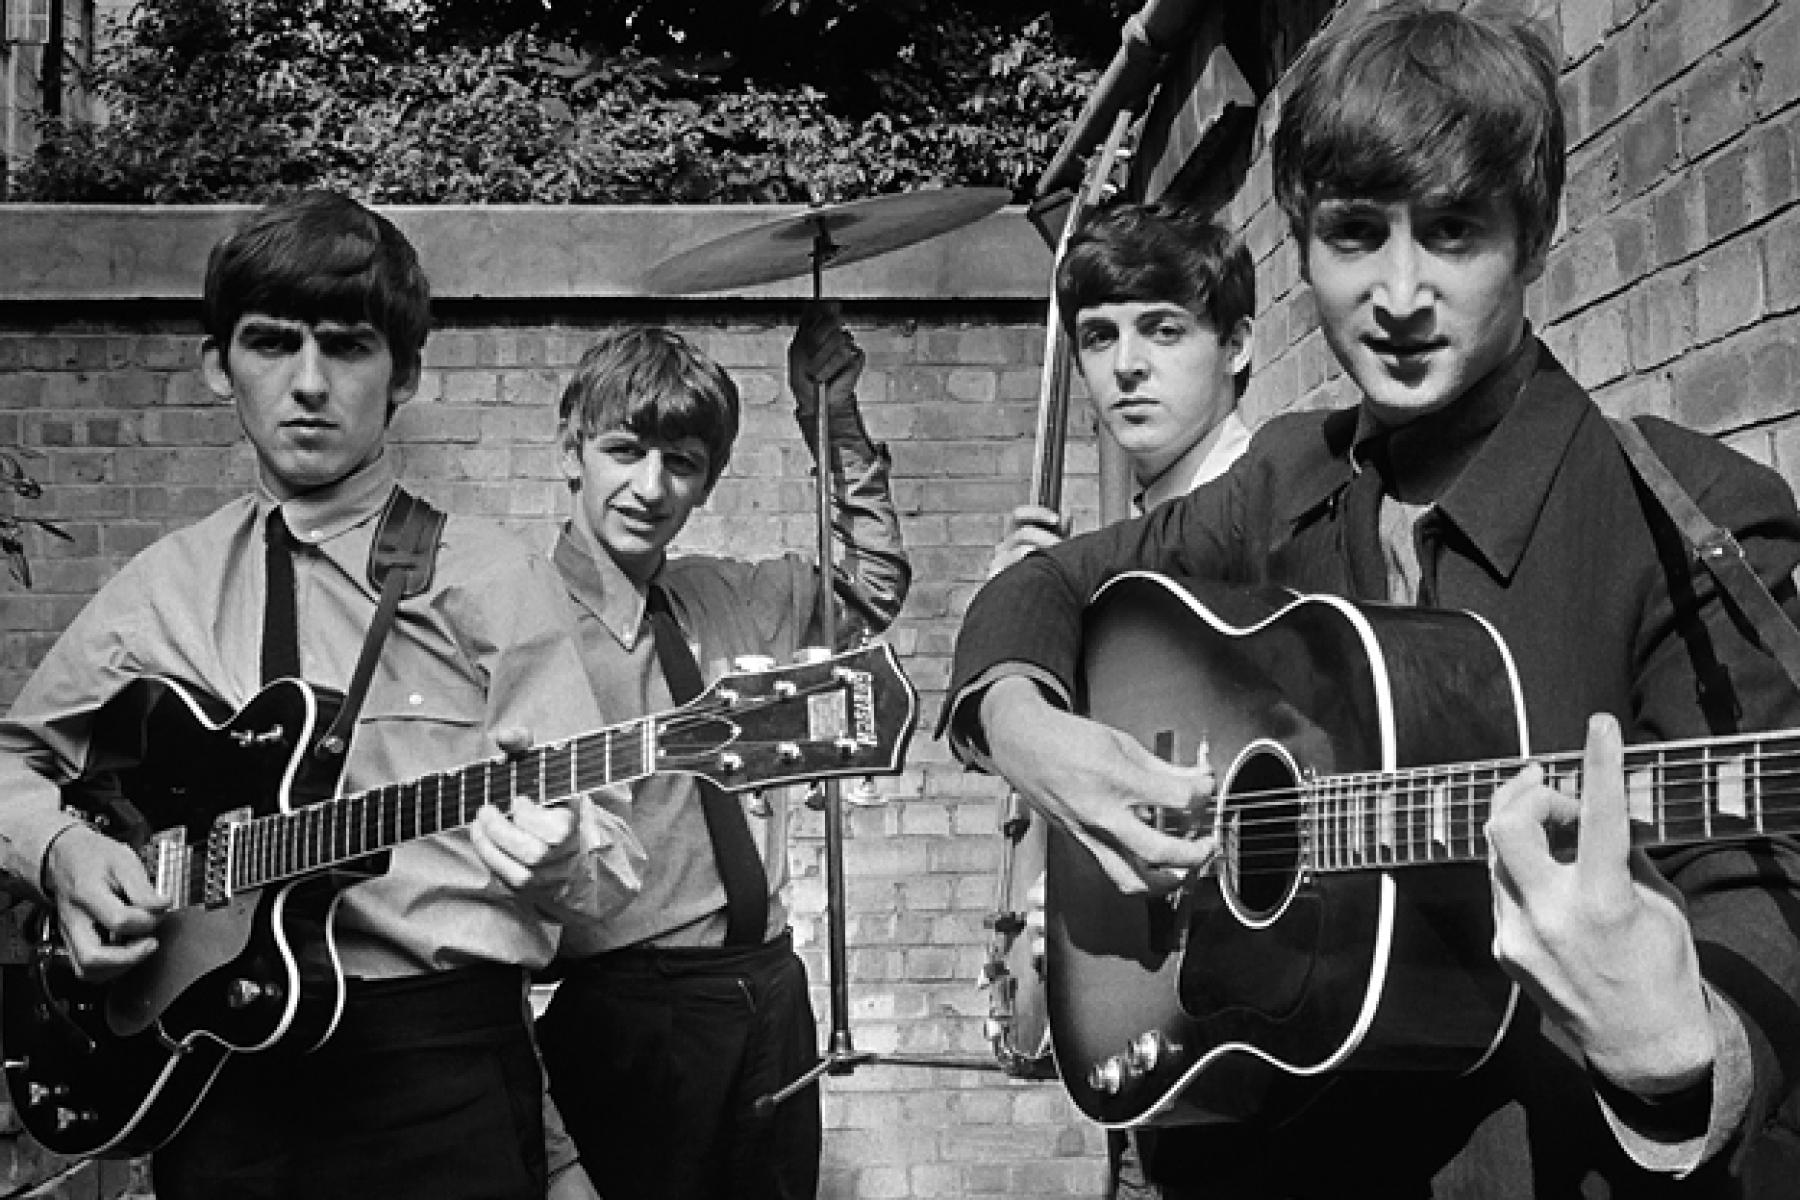 Terry O'Neill
Die Beatles, 1963, später gedruckt
Silber-Gelatine-Druck
Signierte und nummerierte Auflage 47 von 50
mit Echtheitszertifikat

Terry O'Neill CBE (geboren 1938-2019; London, UK) ist ein englischer Fotograf. Bekannt wurde er durch die